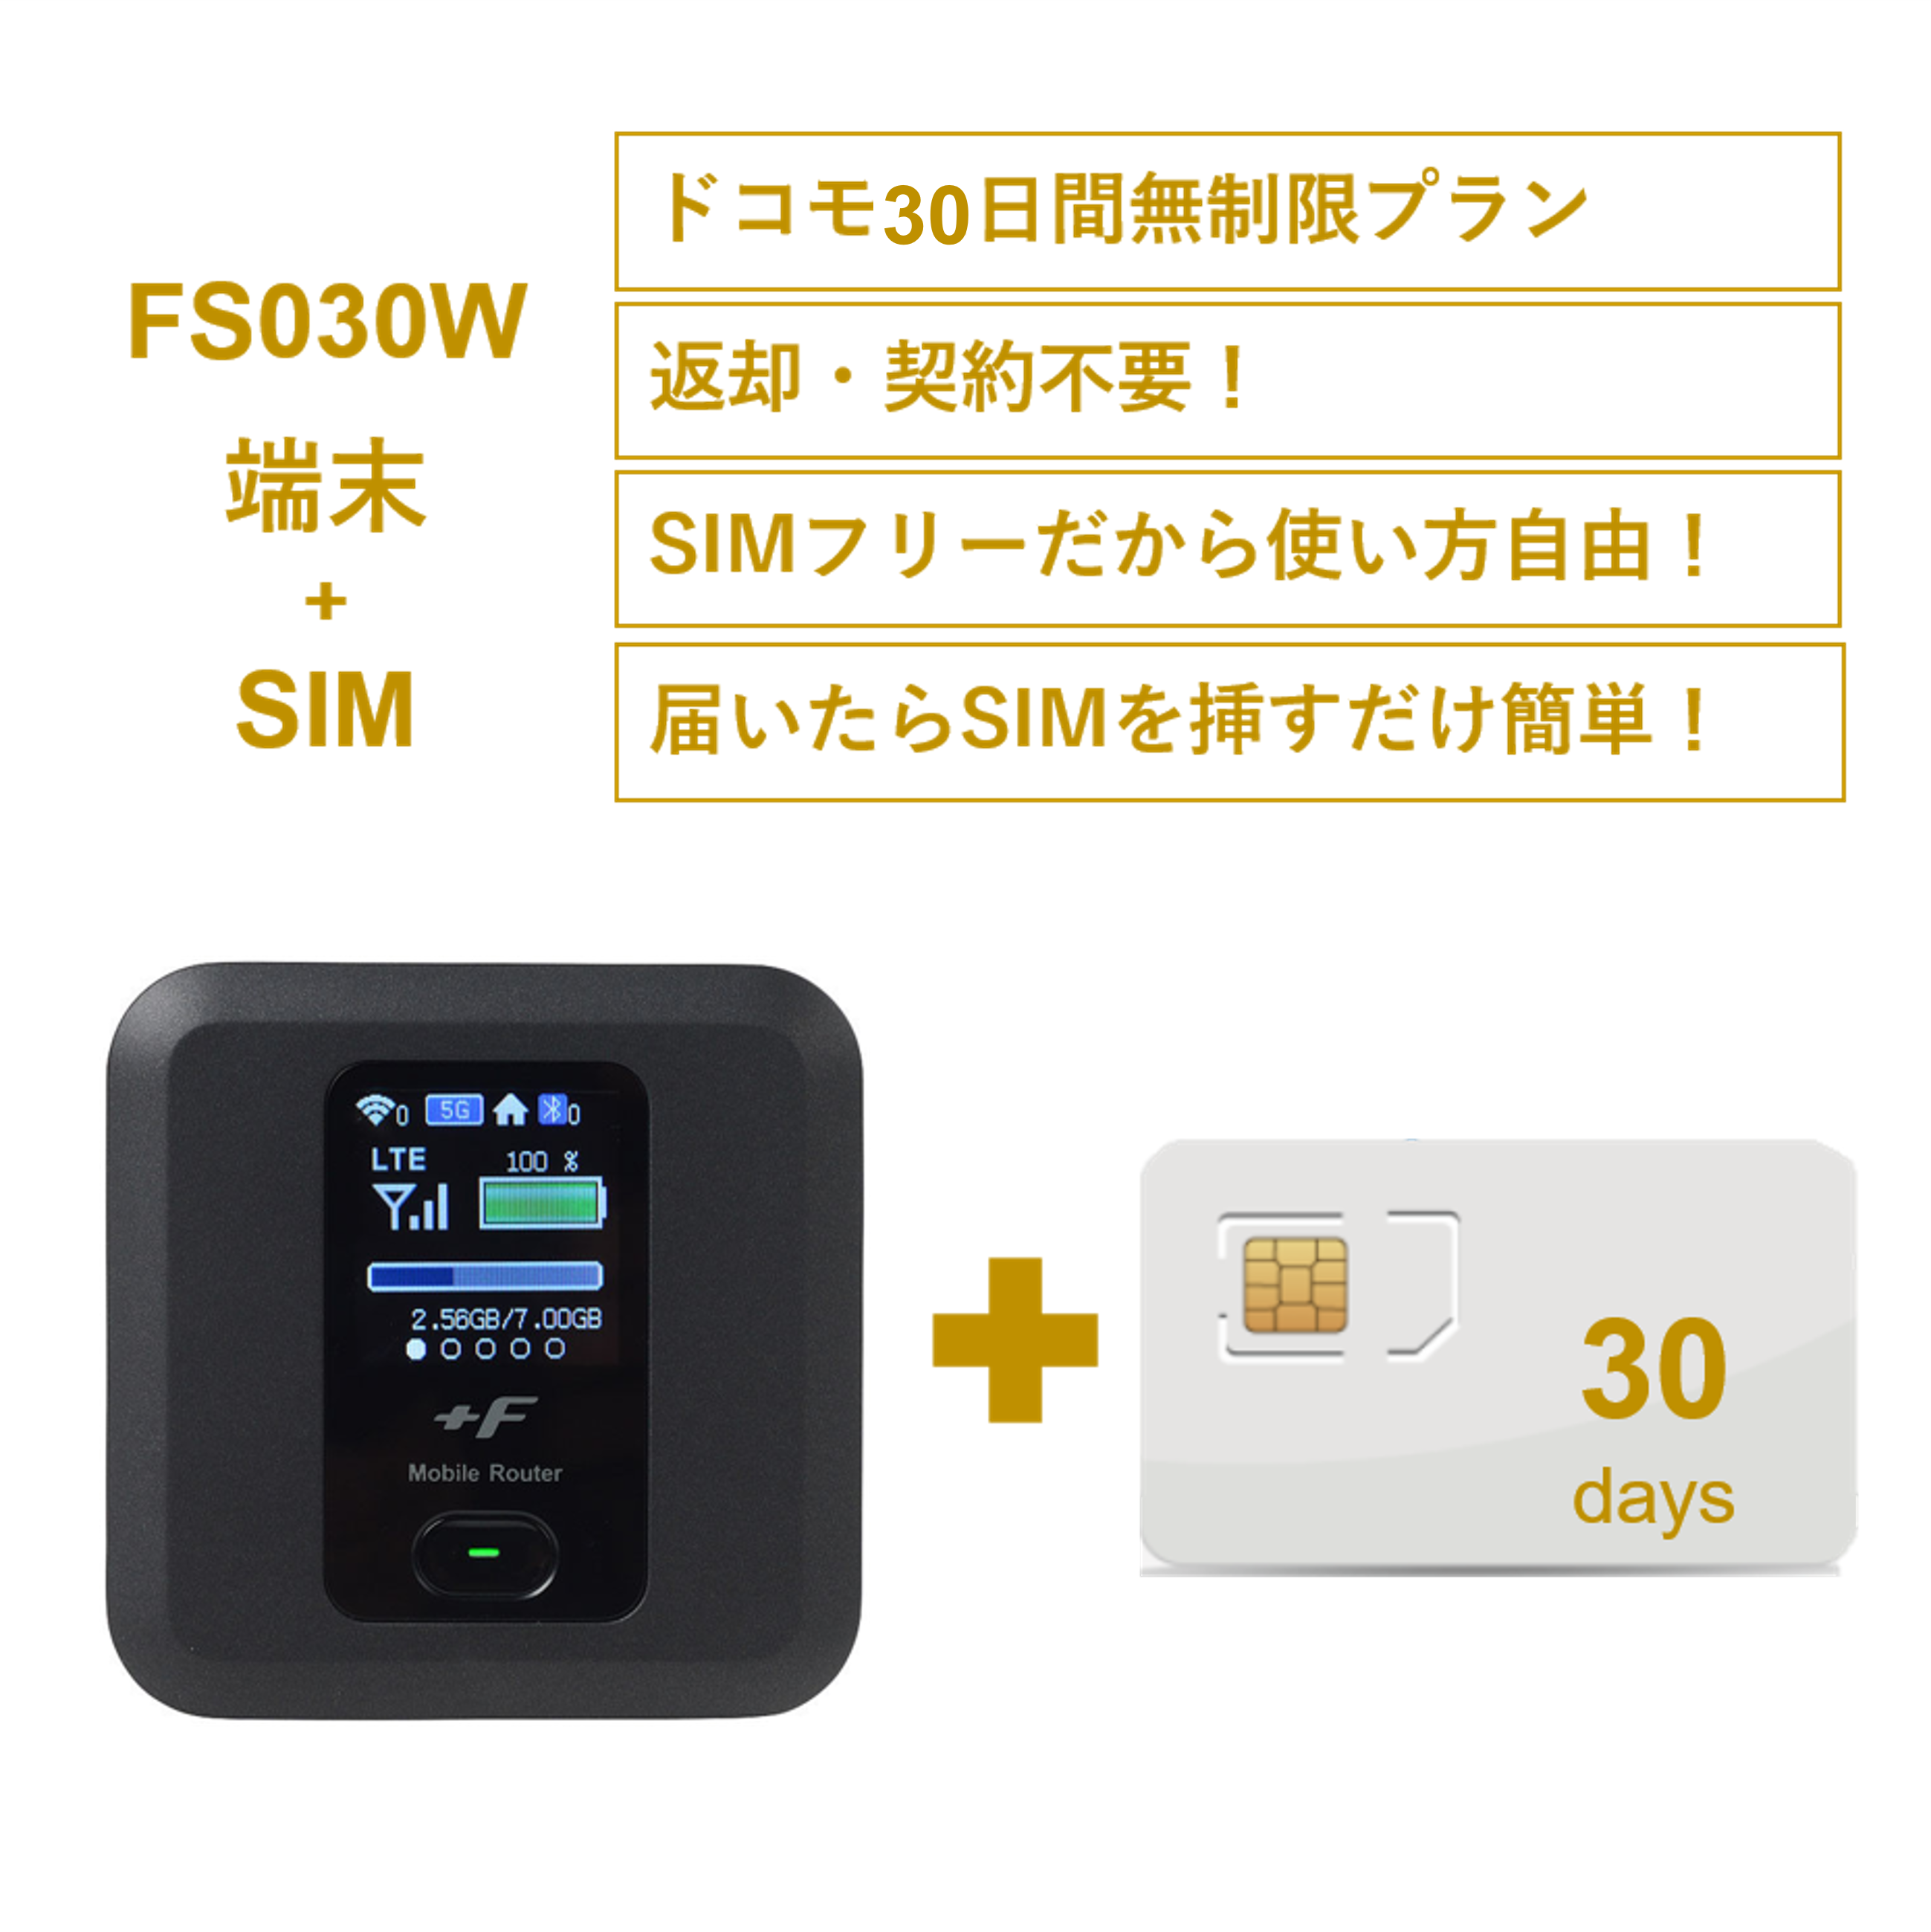 FUJISOFT +F FS030W 富士ソフト モバイルWi-Fiルーター